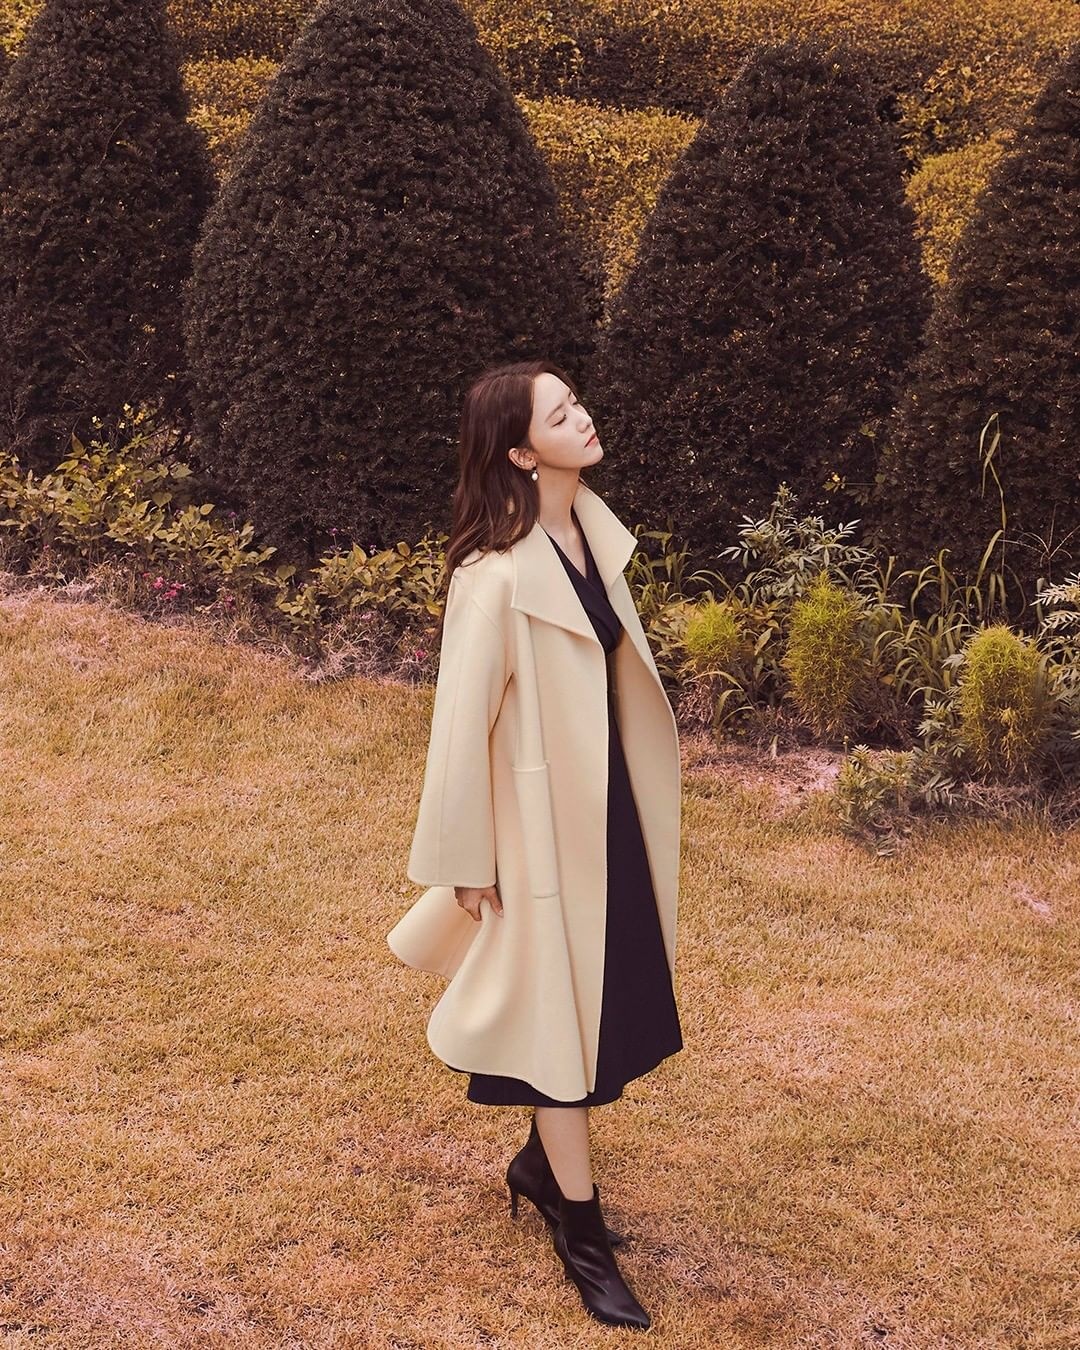 Trench coat và quy tắc phối đồ 2/3 hack chiều cao của Yoona - ảnh 4